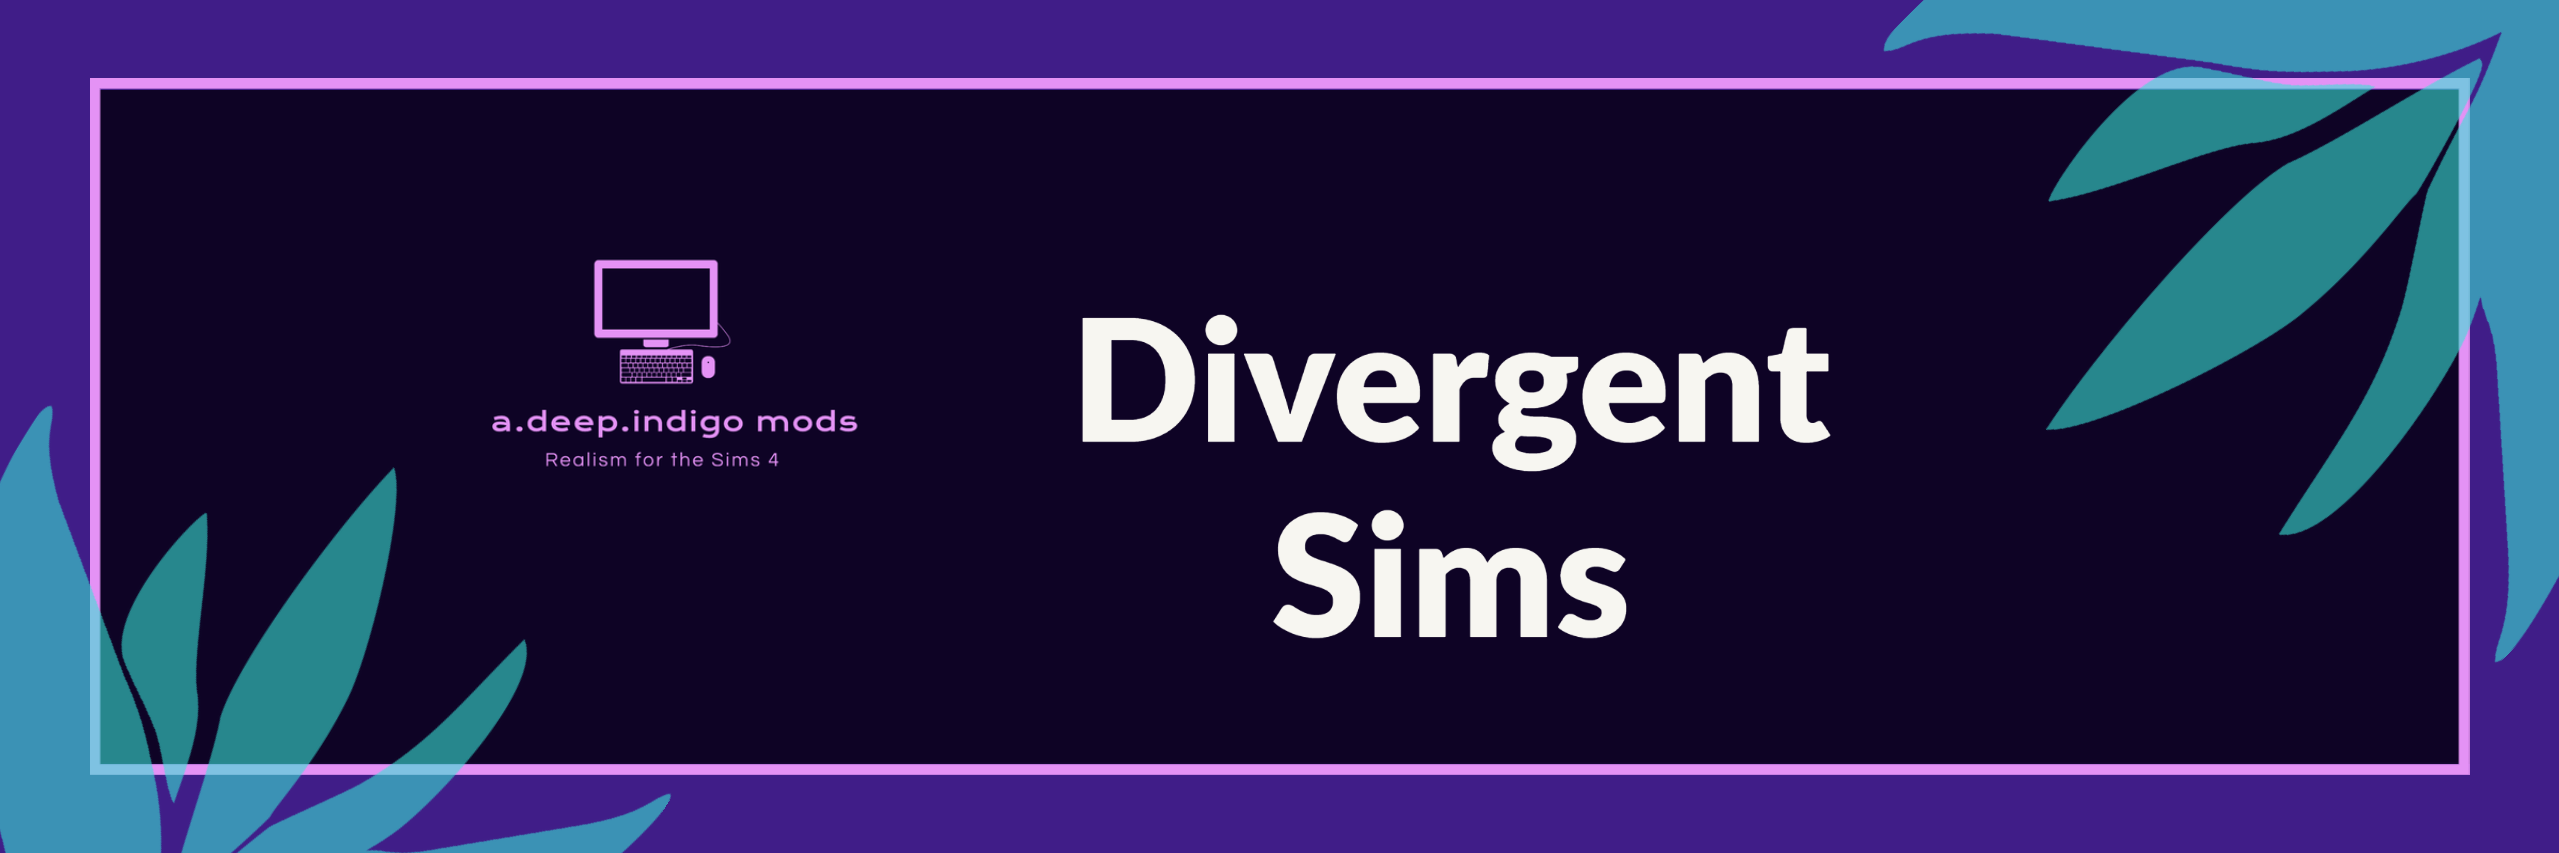 Divergent Sims